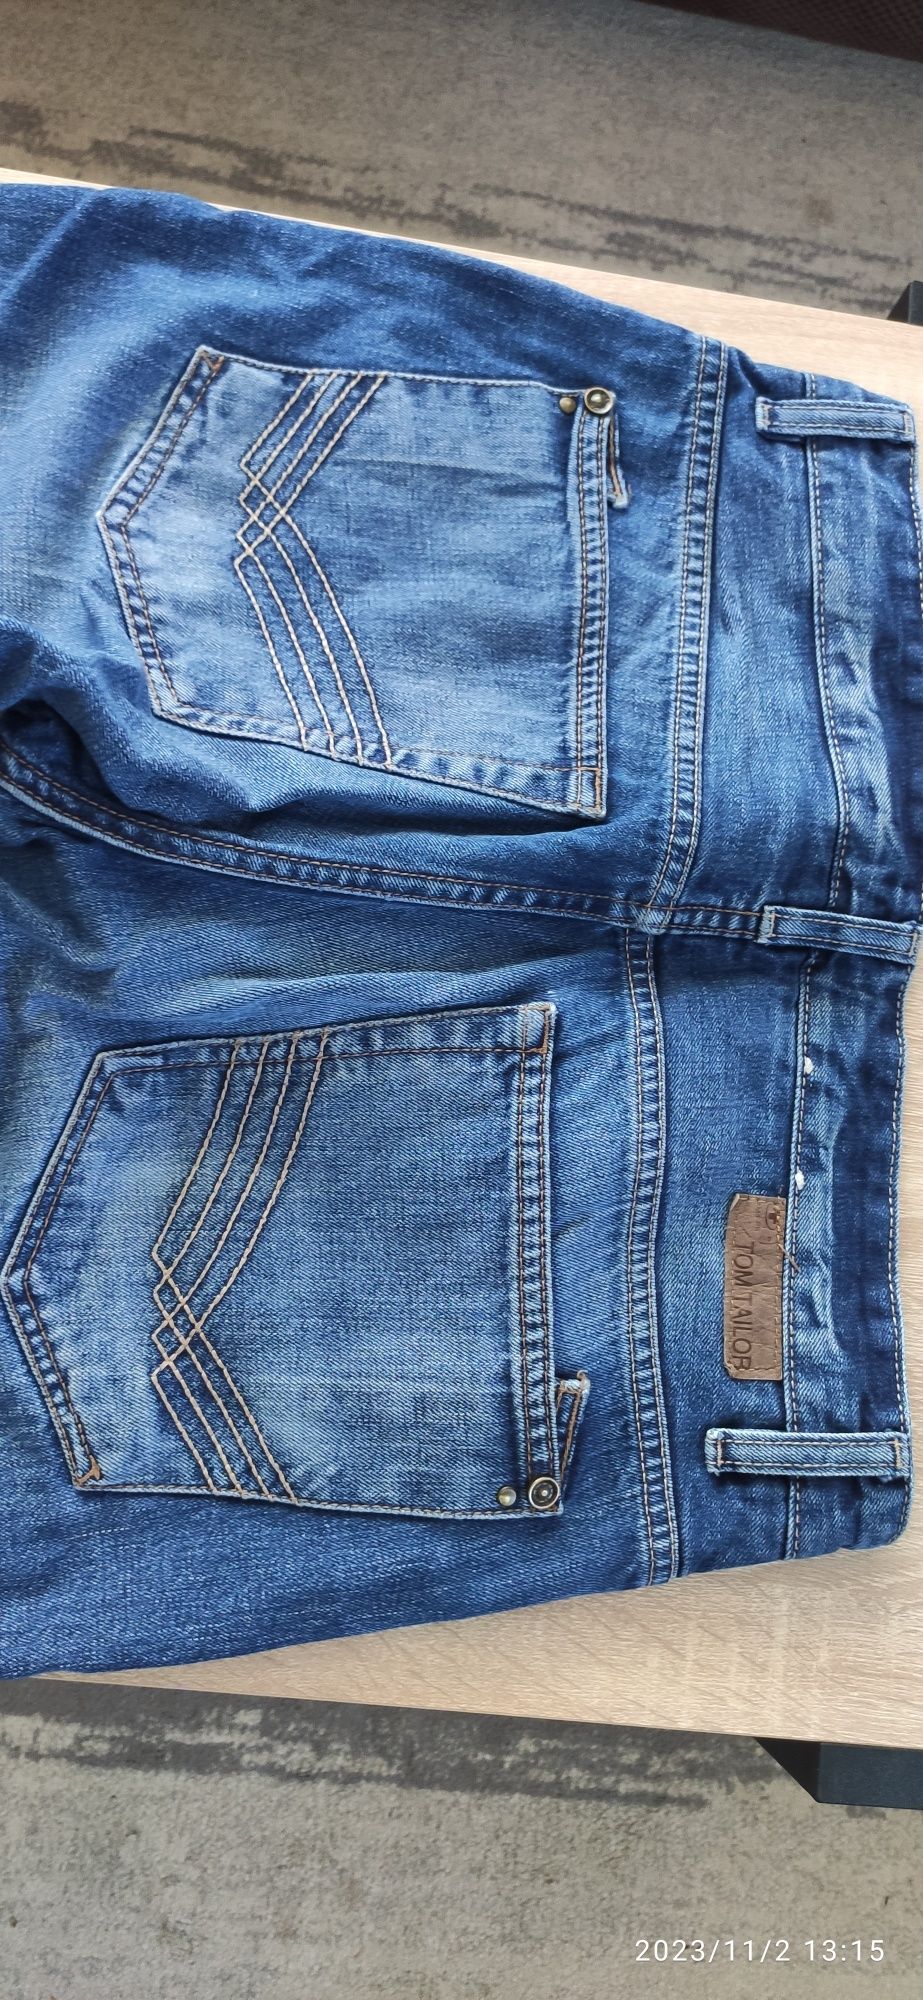 Spodnie jeansowe TOM TAILOR 31/32 proste/straight